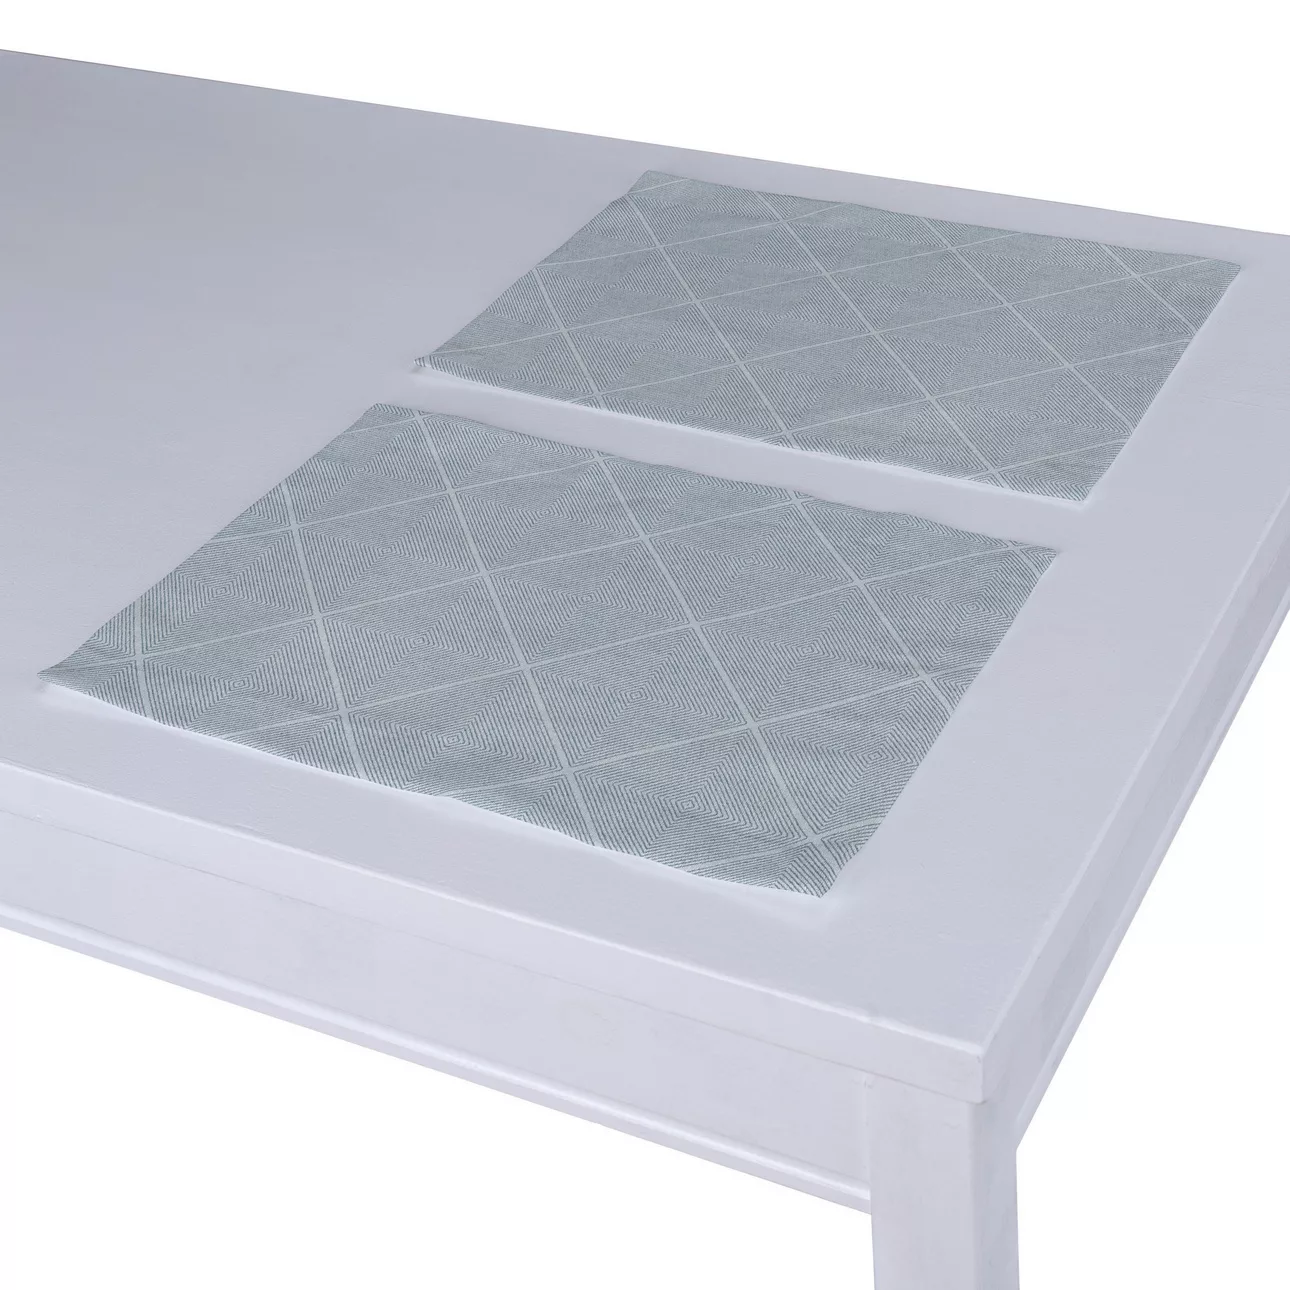 Tischset 2 Stck., grau-silbern, 30 x 40 cm, Sunny (142-57) günstig online kaufen